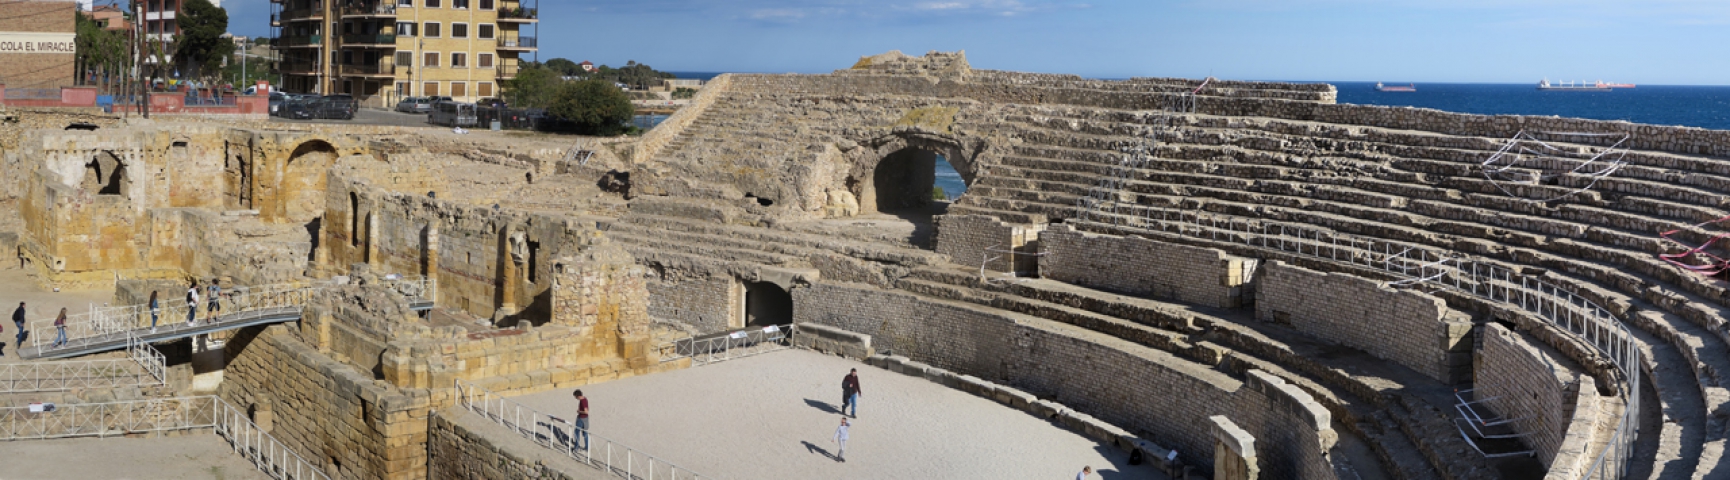 05294 Roman amphitheater, Tarragona